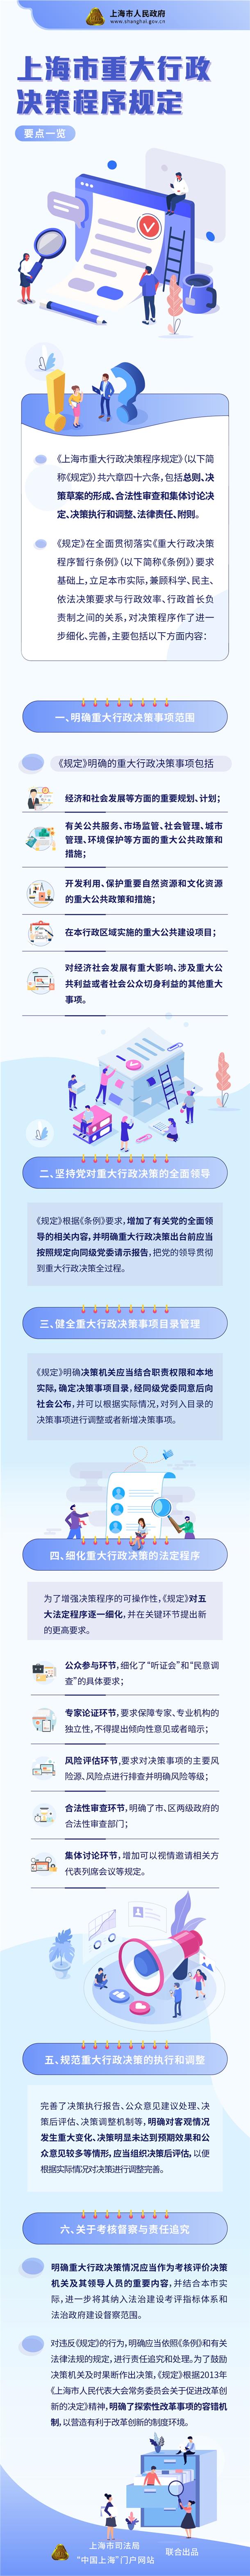 上海市重大行政决策程序一览.jpg